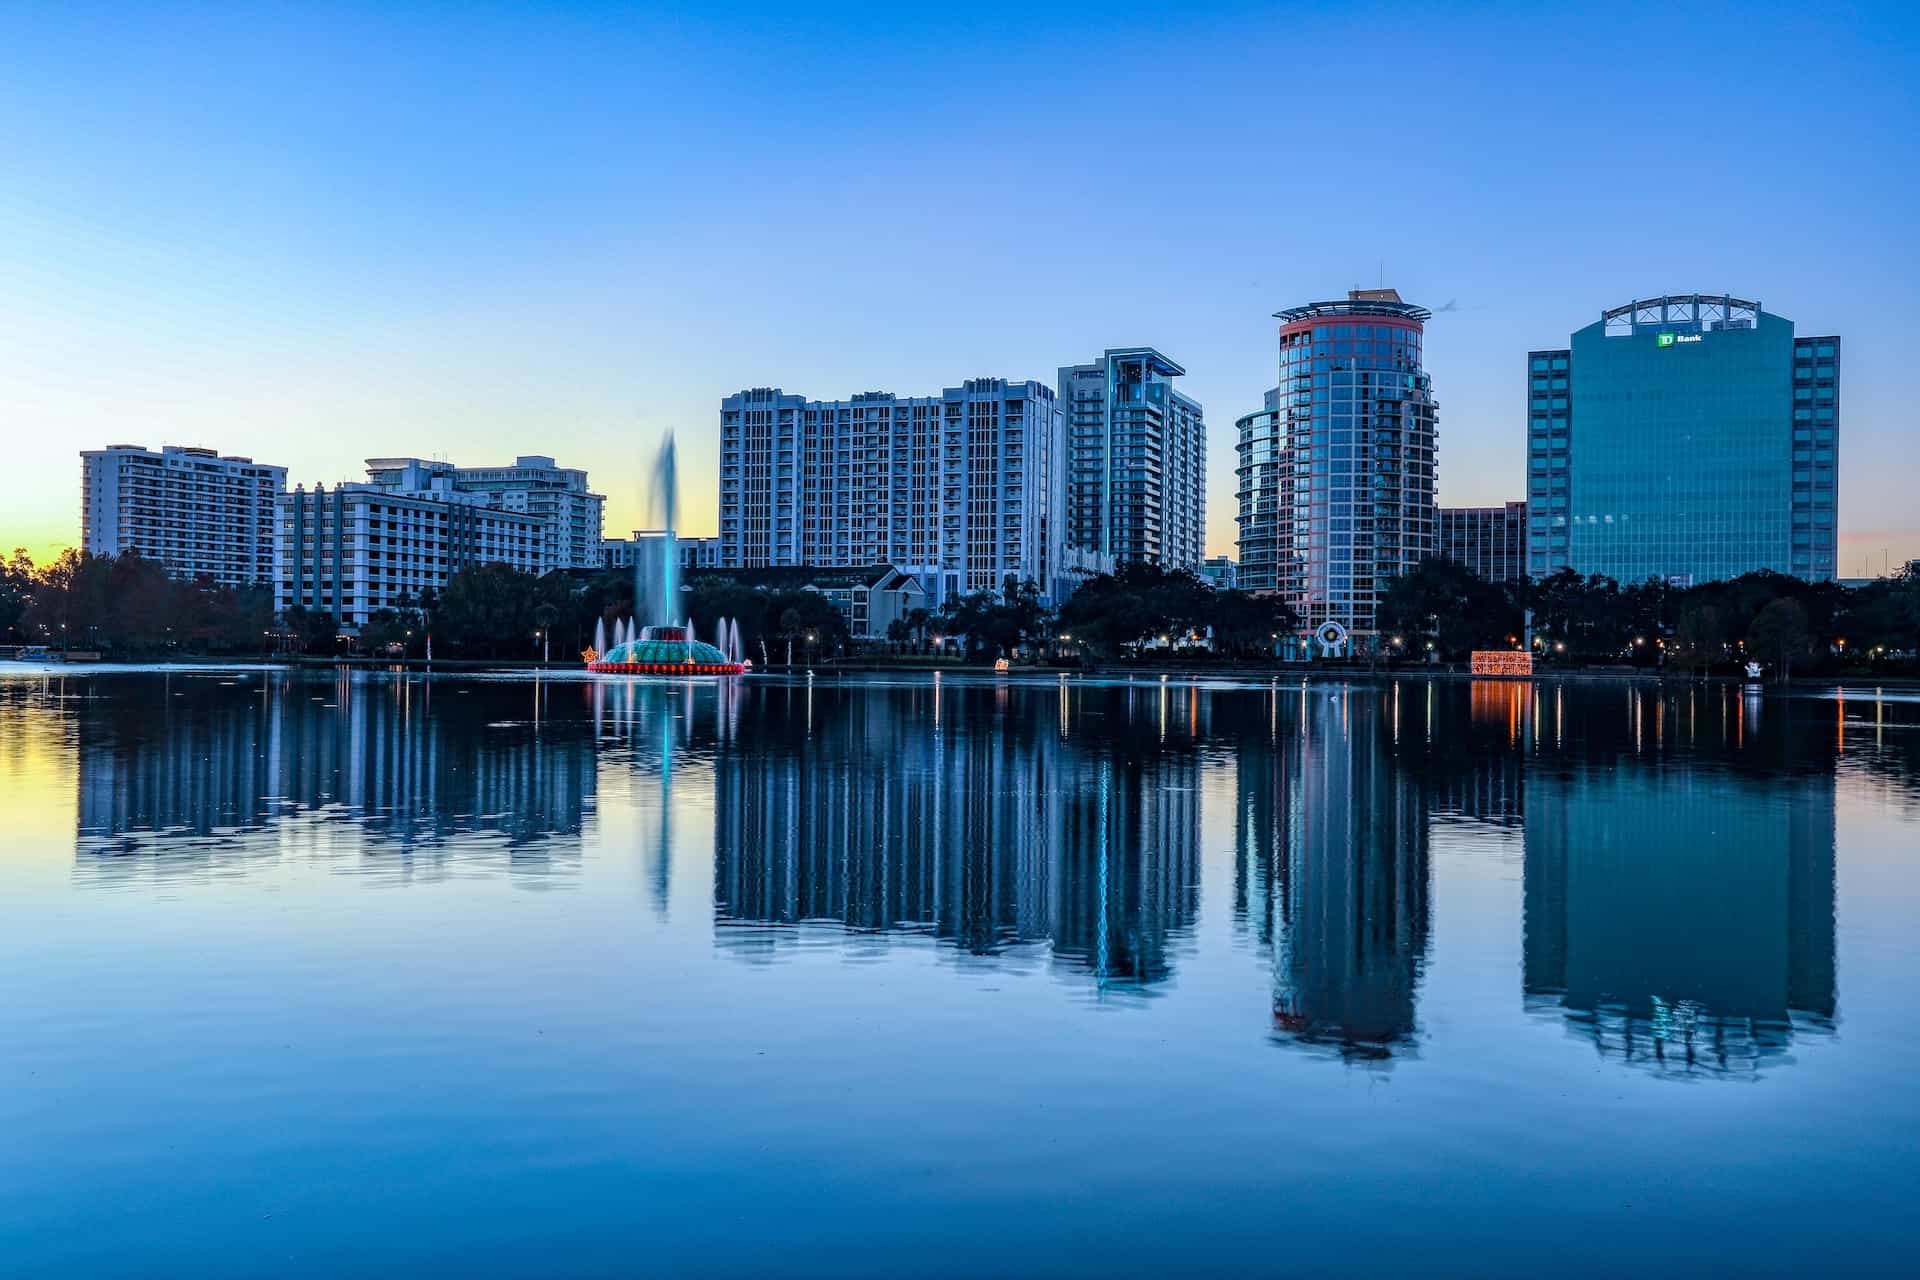 Orlando Florida buildings by water